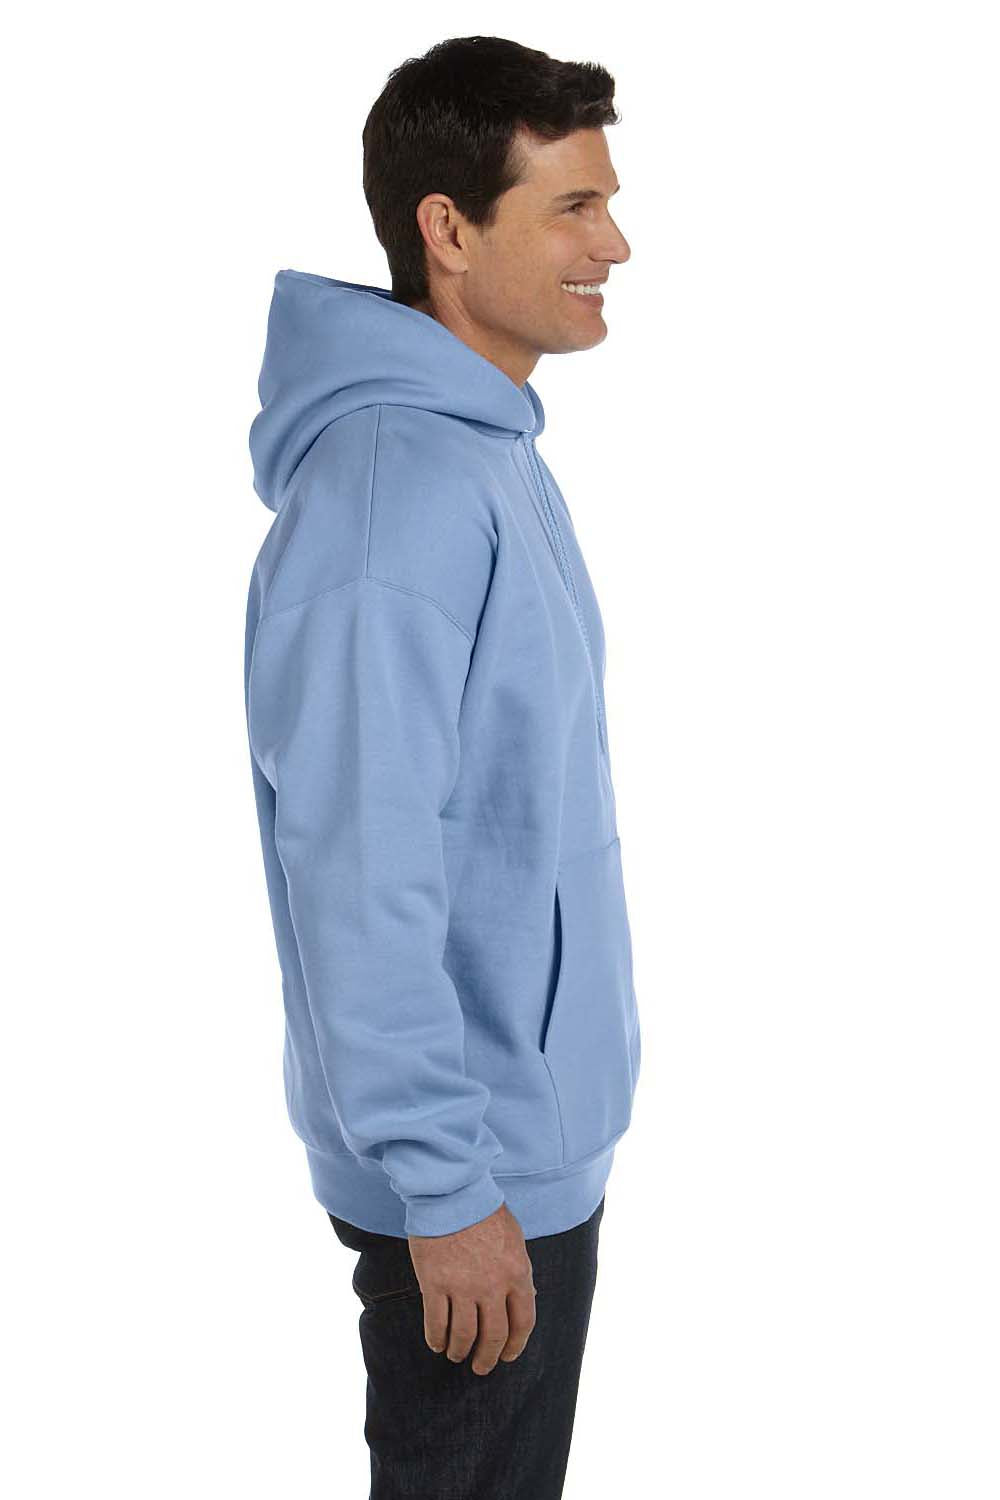 Hanes F170 Mens Ultimate Cotton PrintPro XP Hooded Sweatshirt Hoodie Light Blue Side